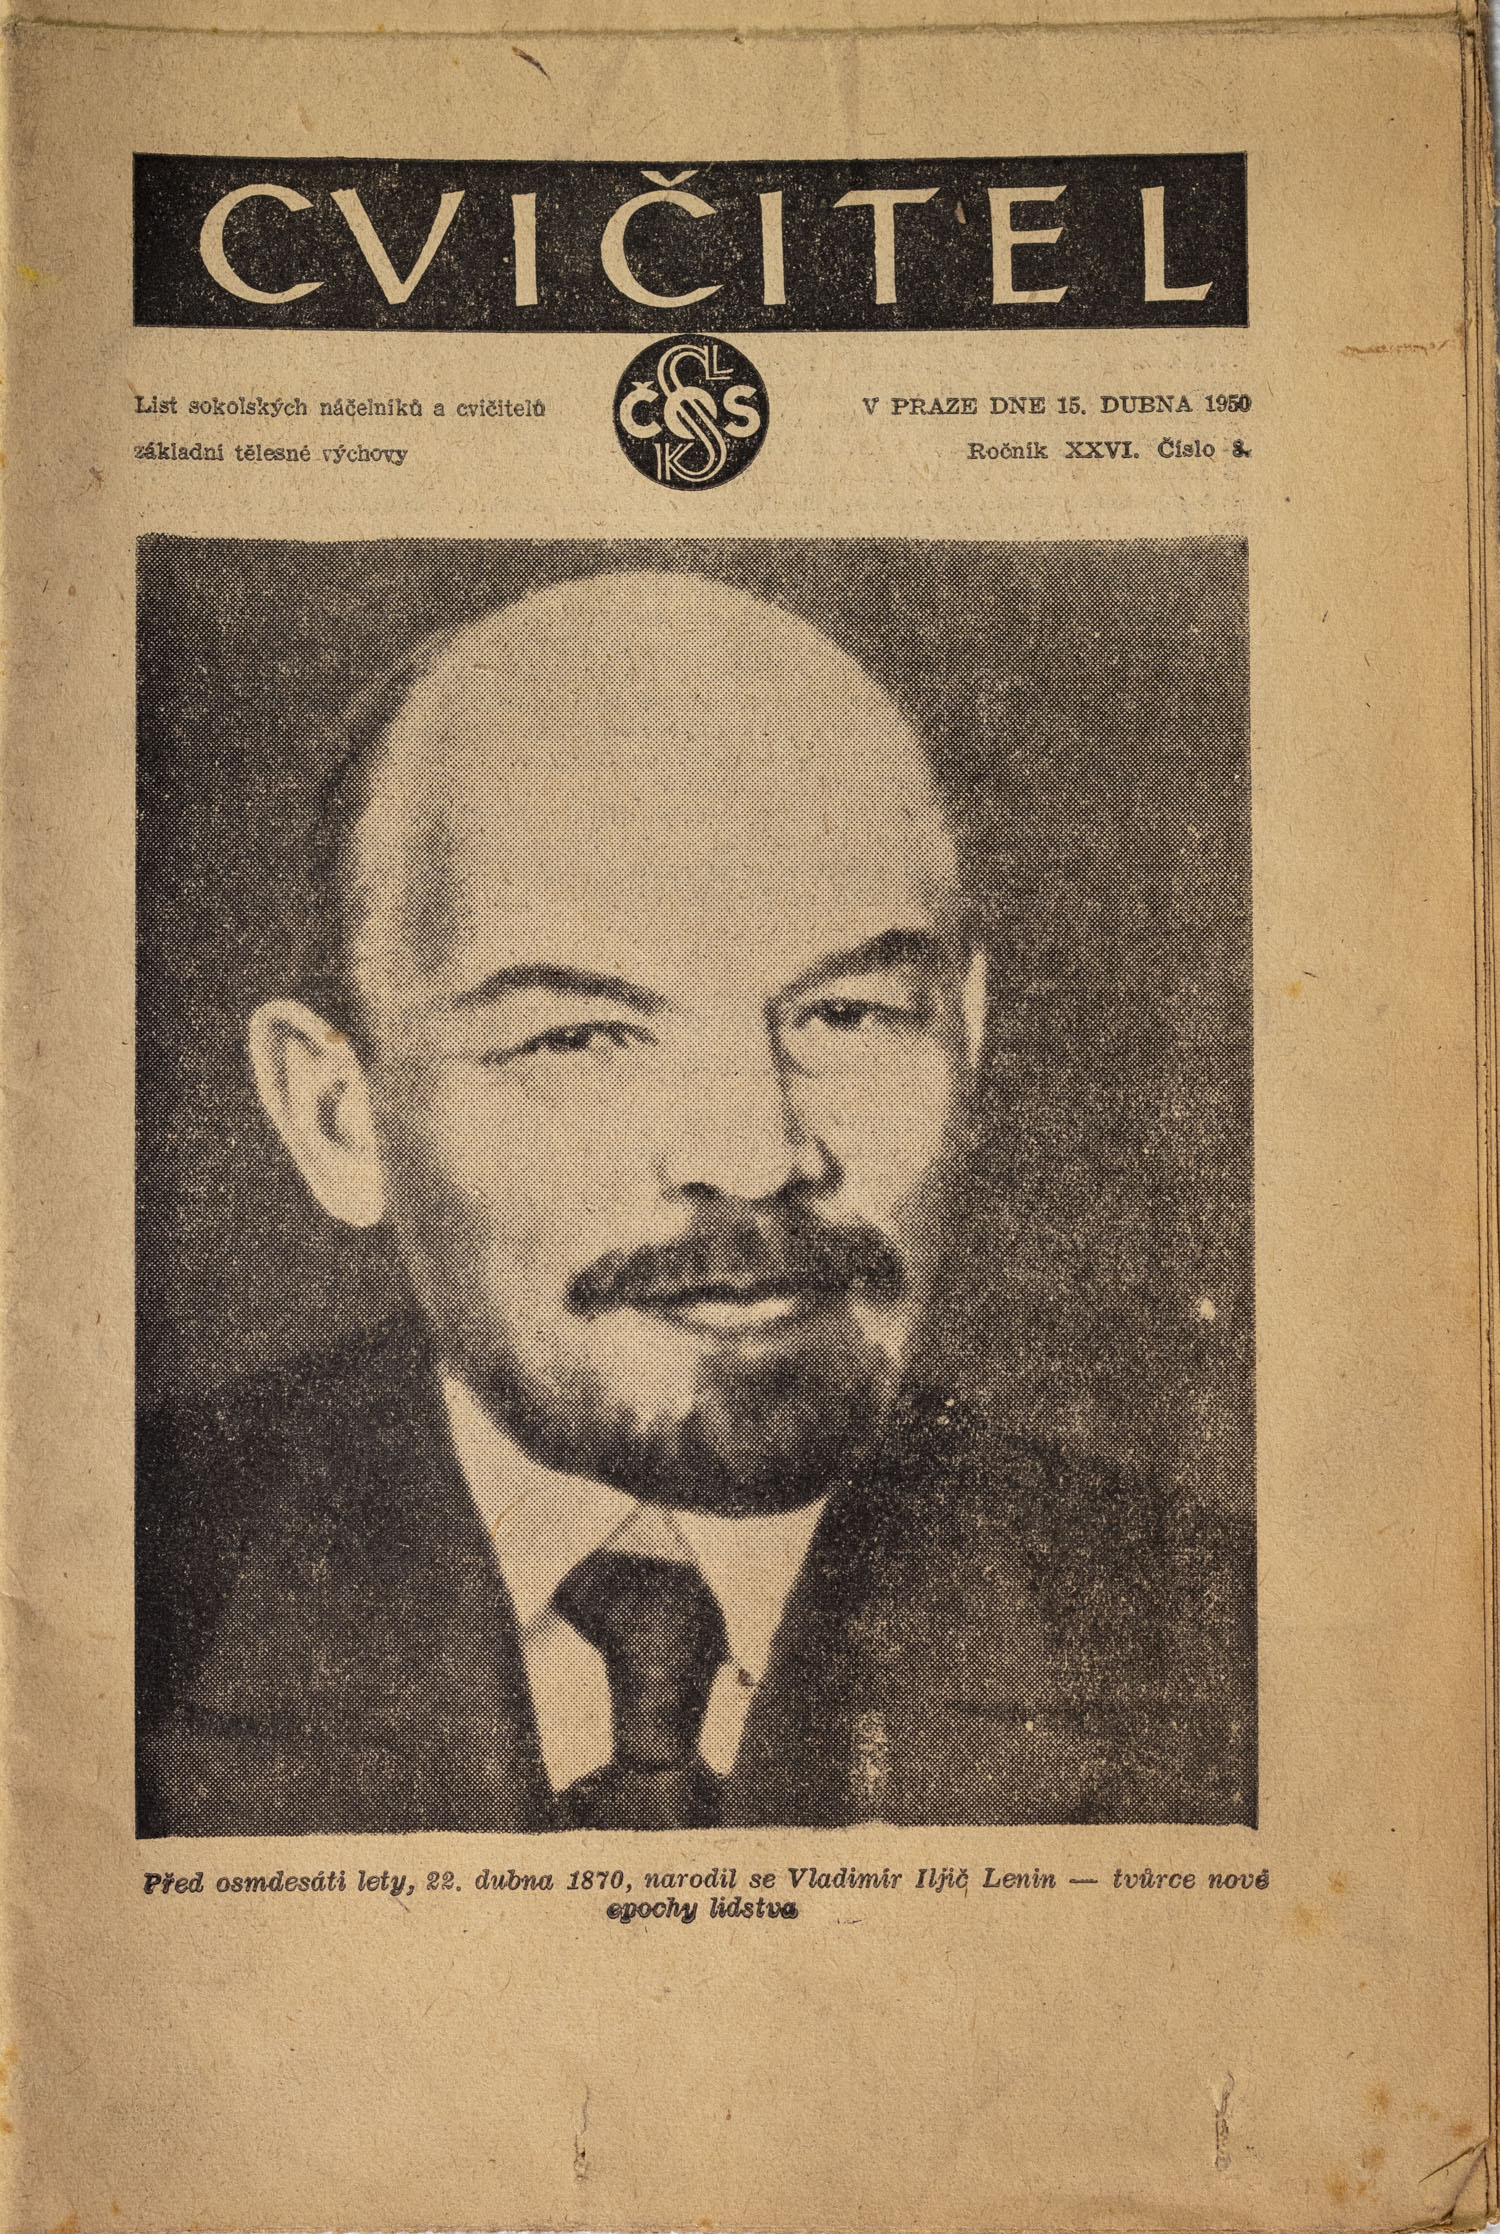 Sokol, Cvičitel, Ročník XXVI, Číslo 8, 1950